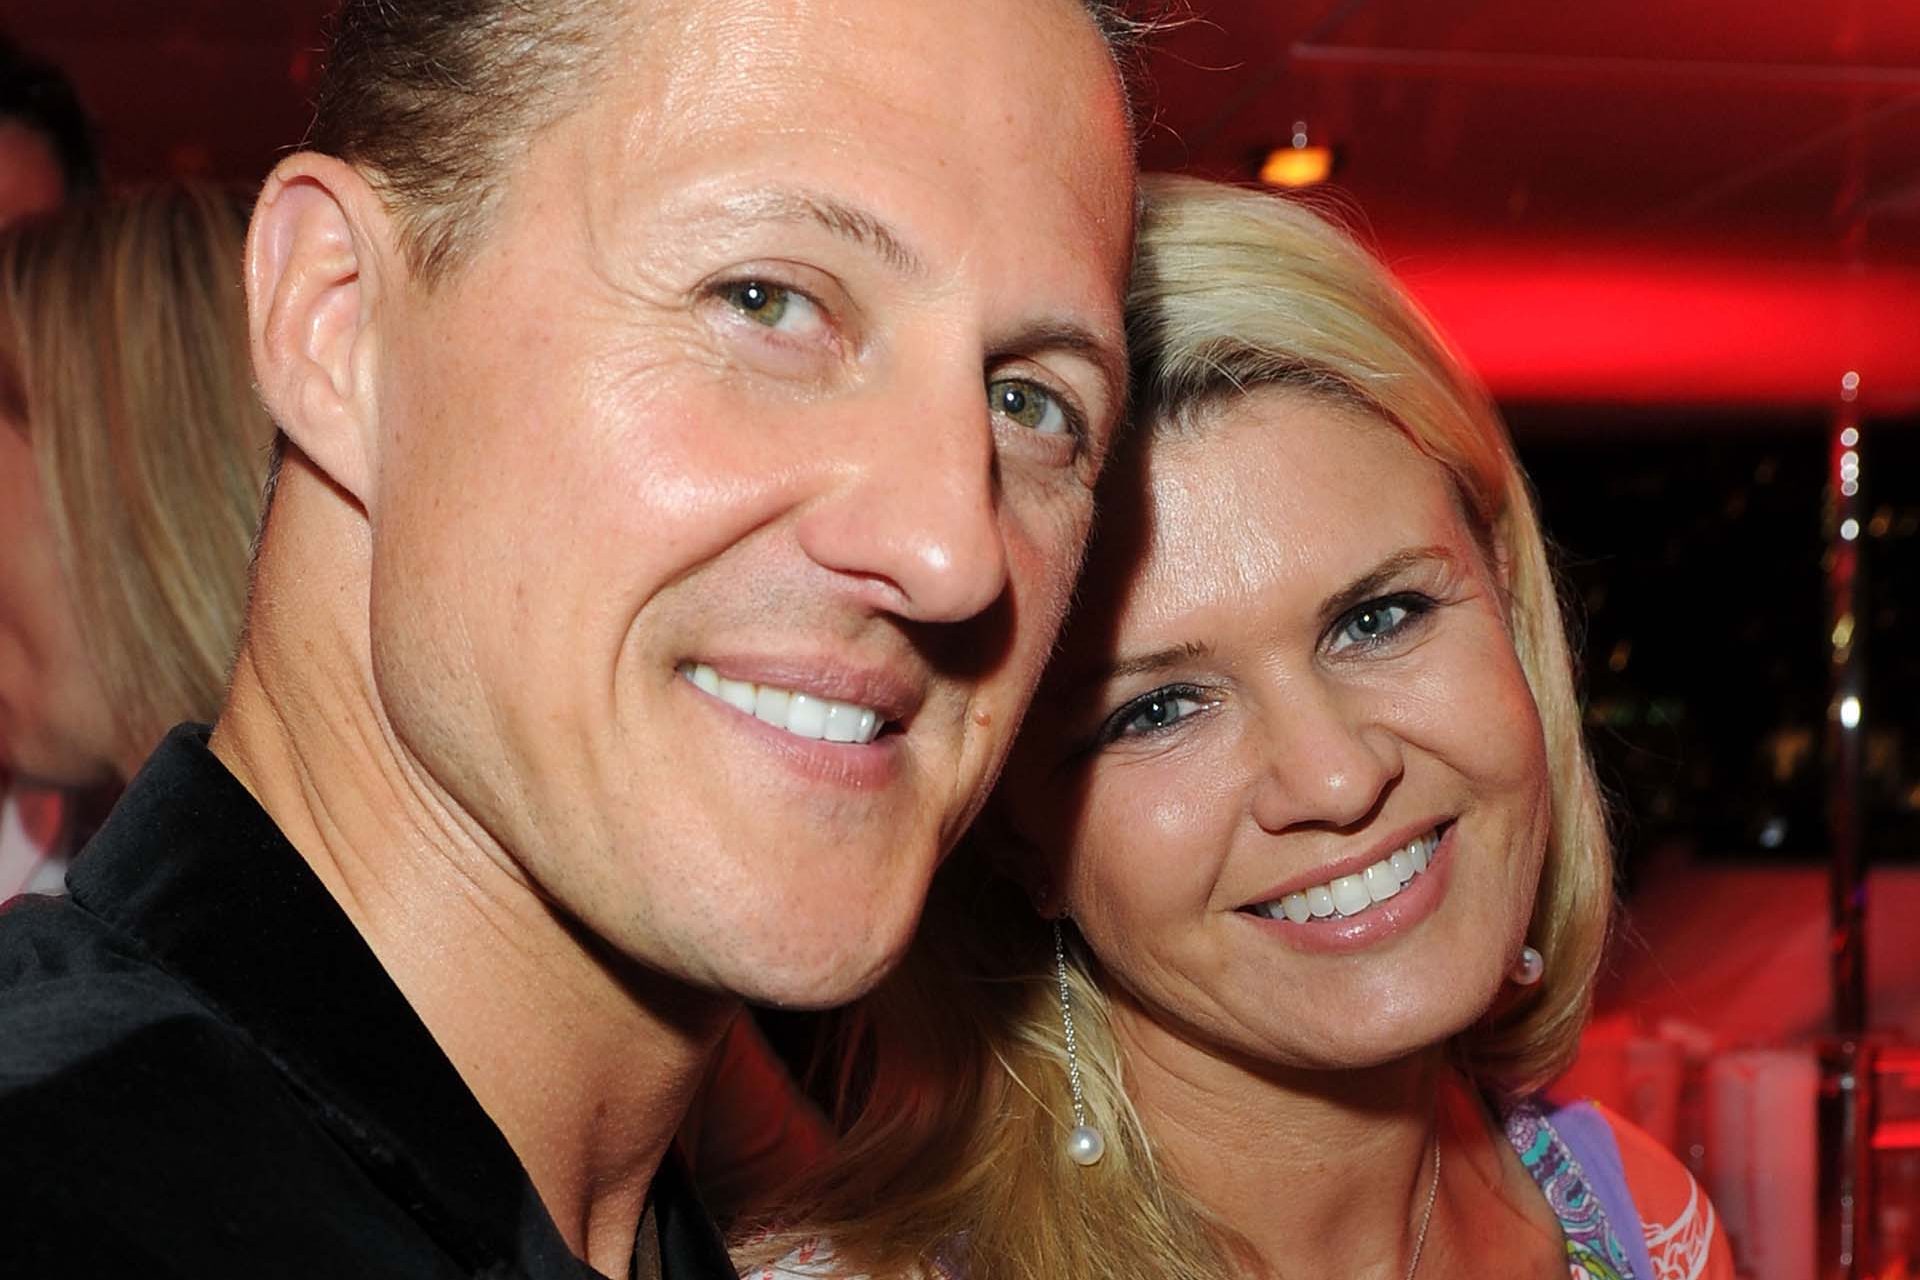 La familia de Schumacher, víctima de extorsión millonaria